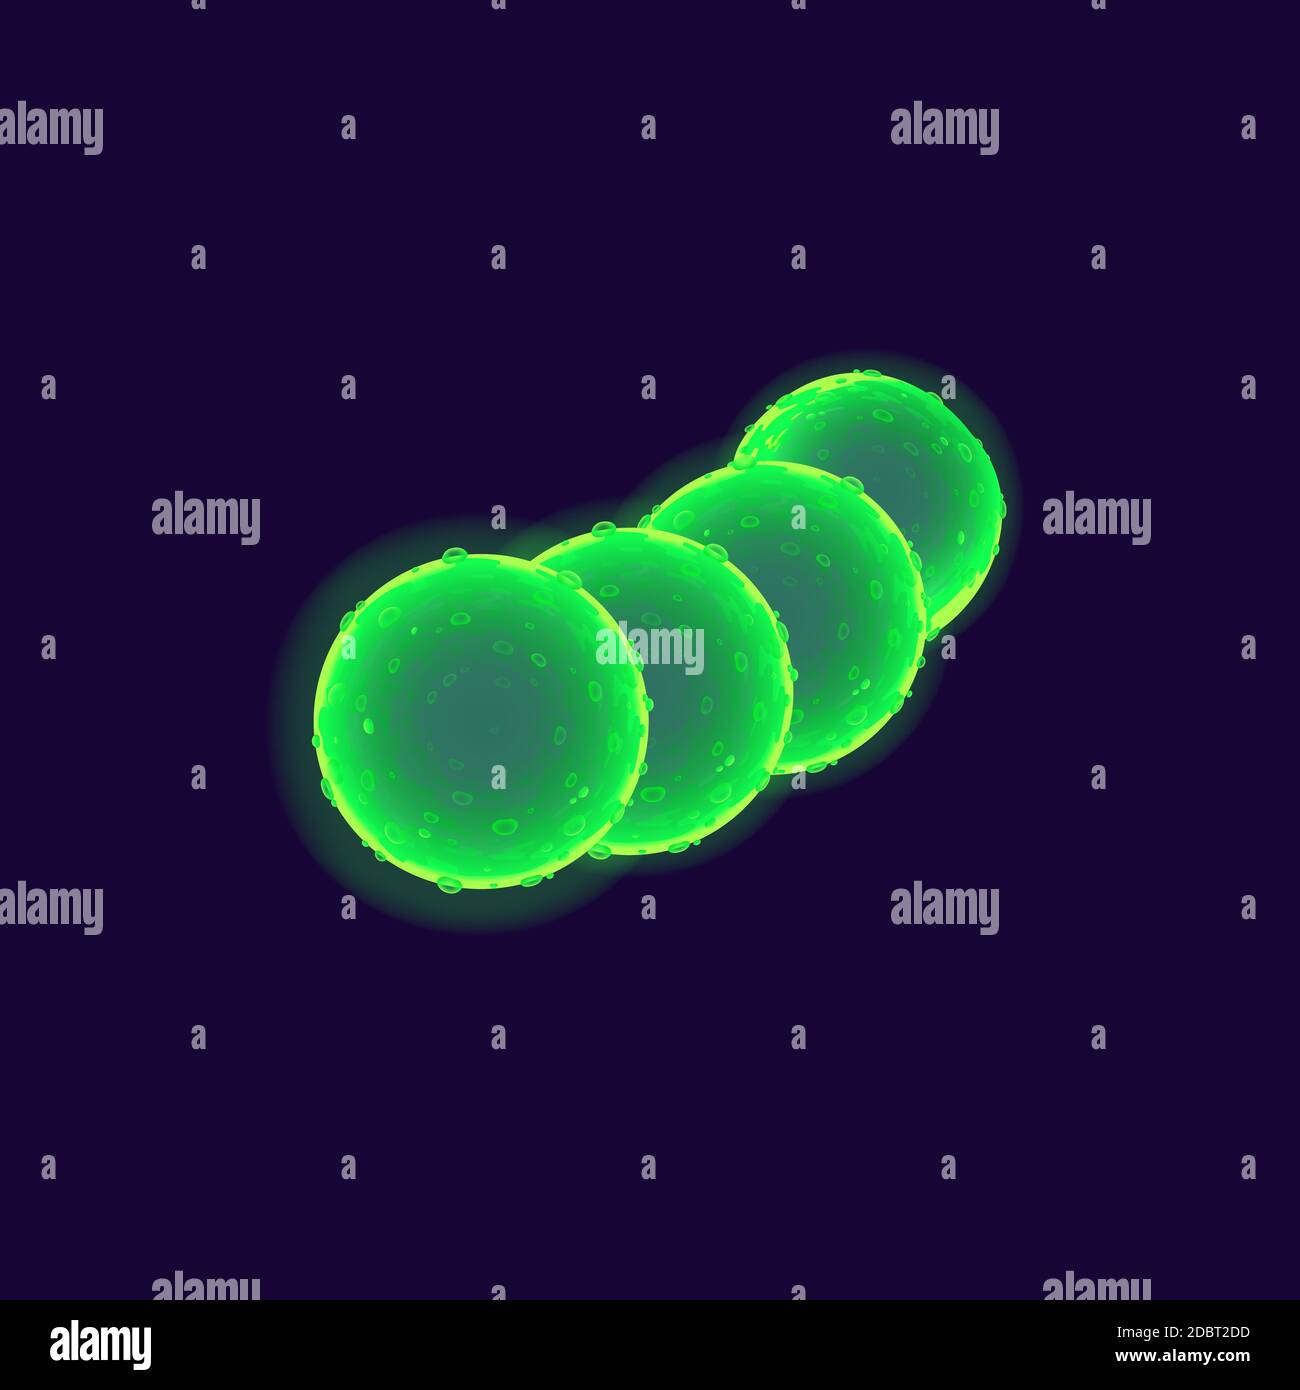 Illustration du vecteur réaliste des cellules bactériennes. Organisme pathogène. Chaîne Streptococcus. micro-organisme 3d isolé de couleur verte de forme ronde sous microsc Banque D'Images